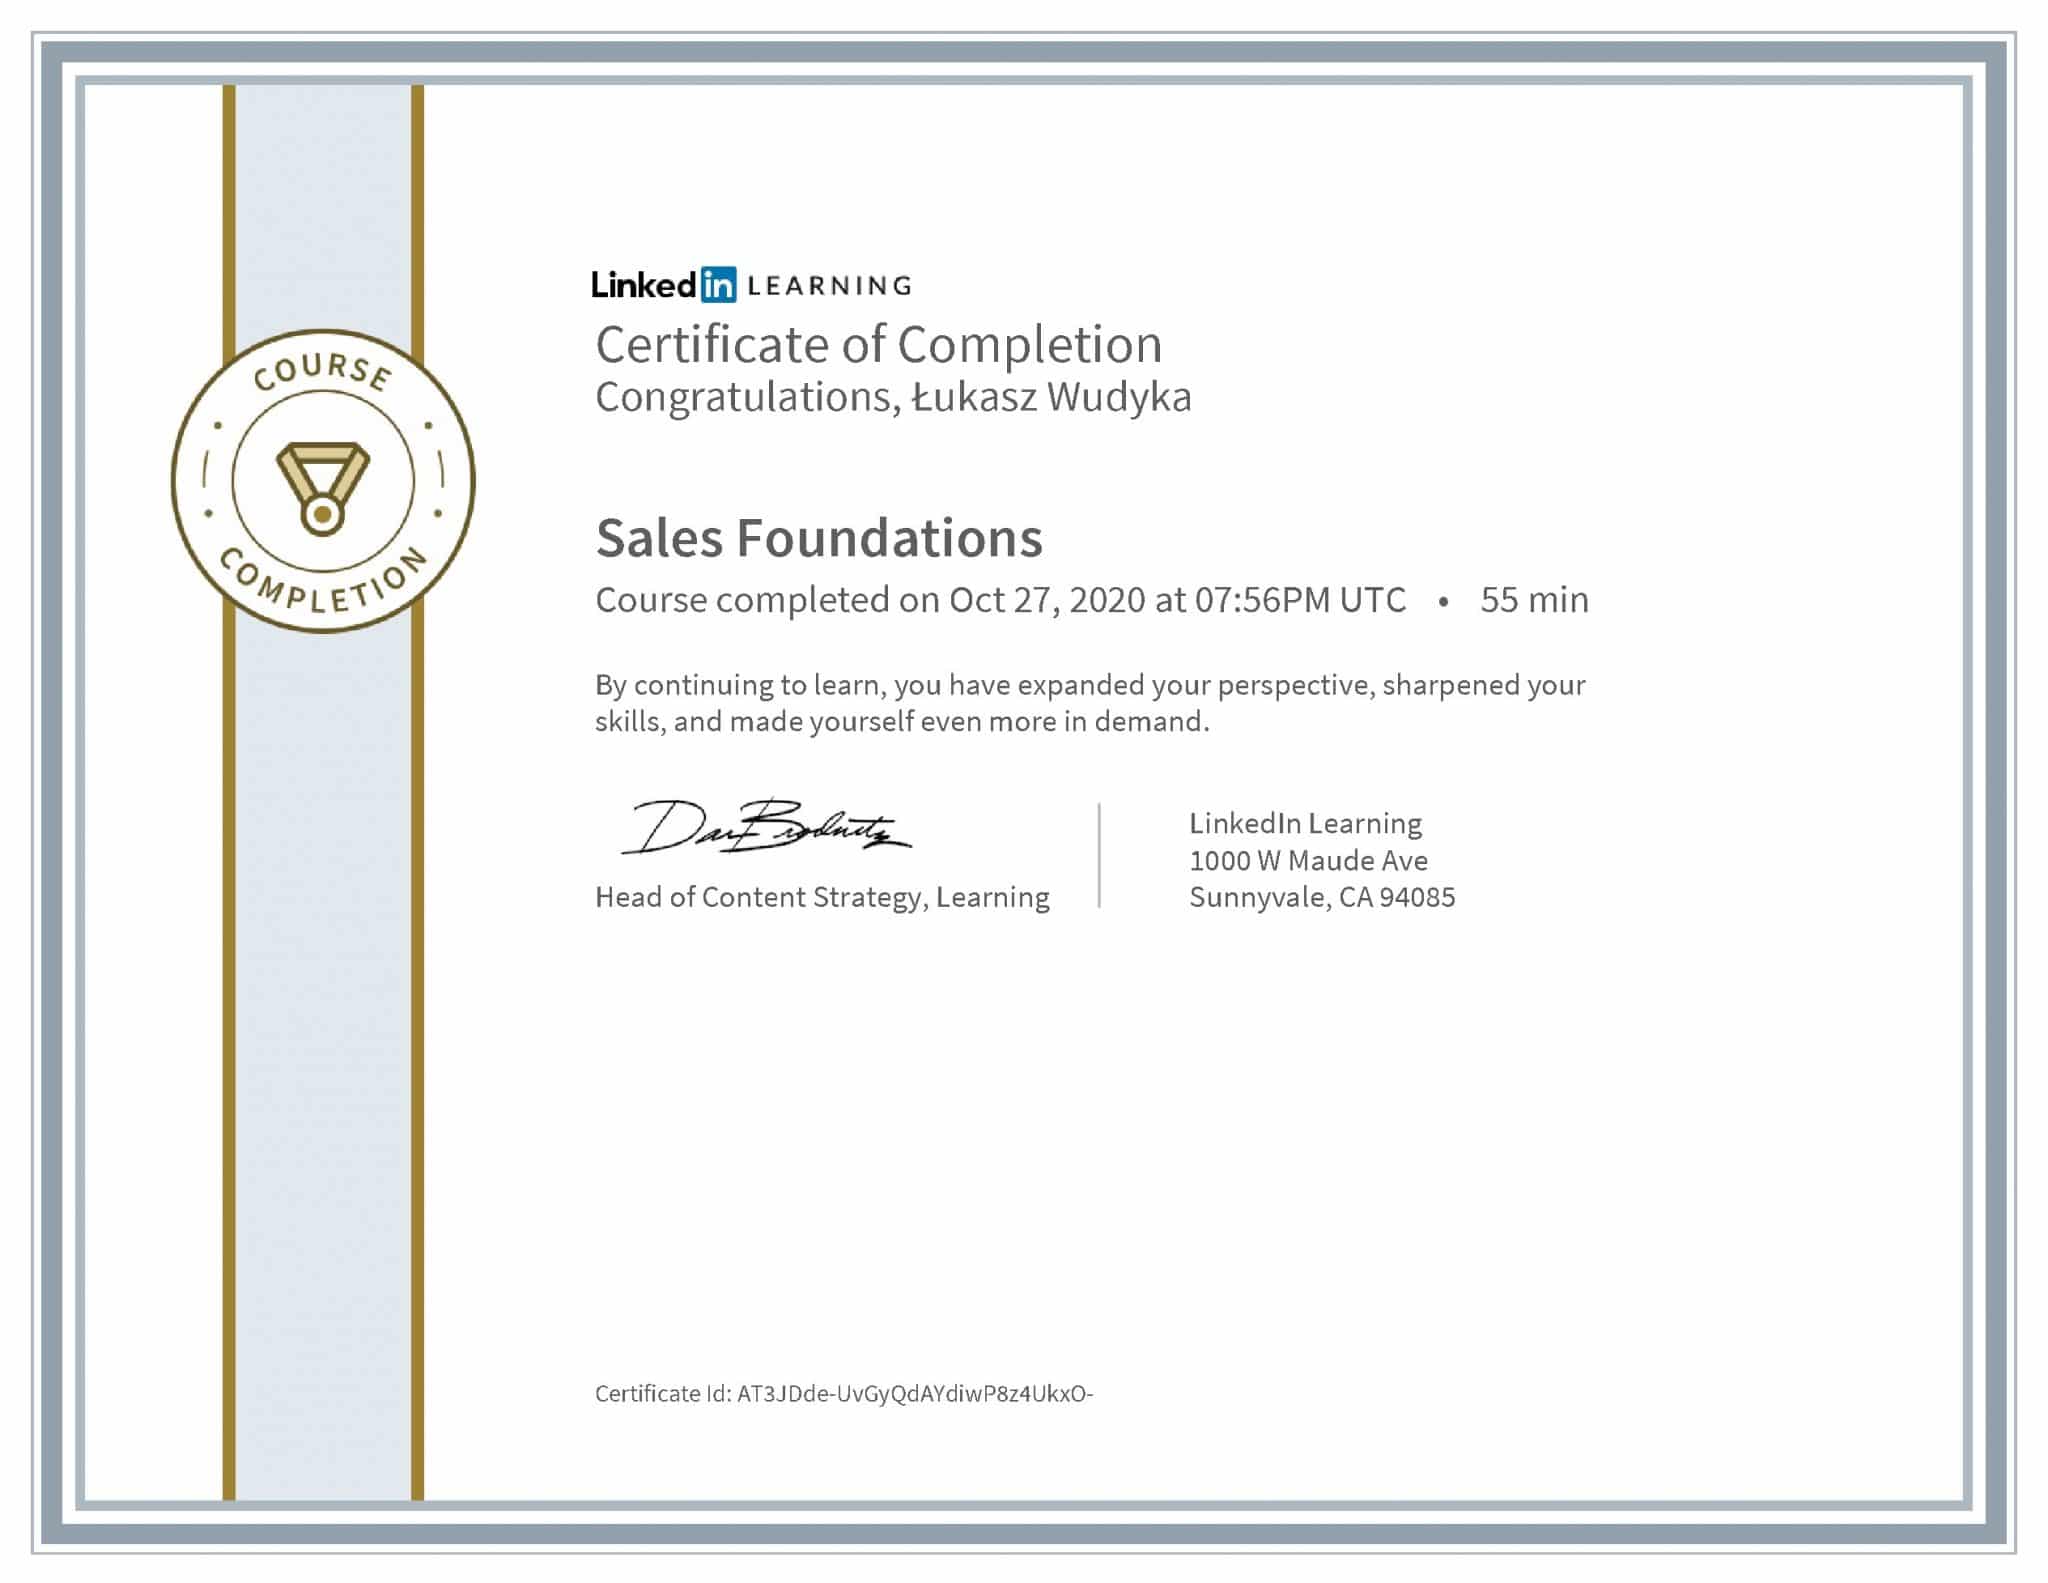 Łukasz Wudyka certyfikat LinkedIn Sales Foundations